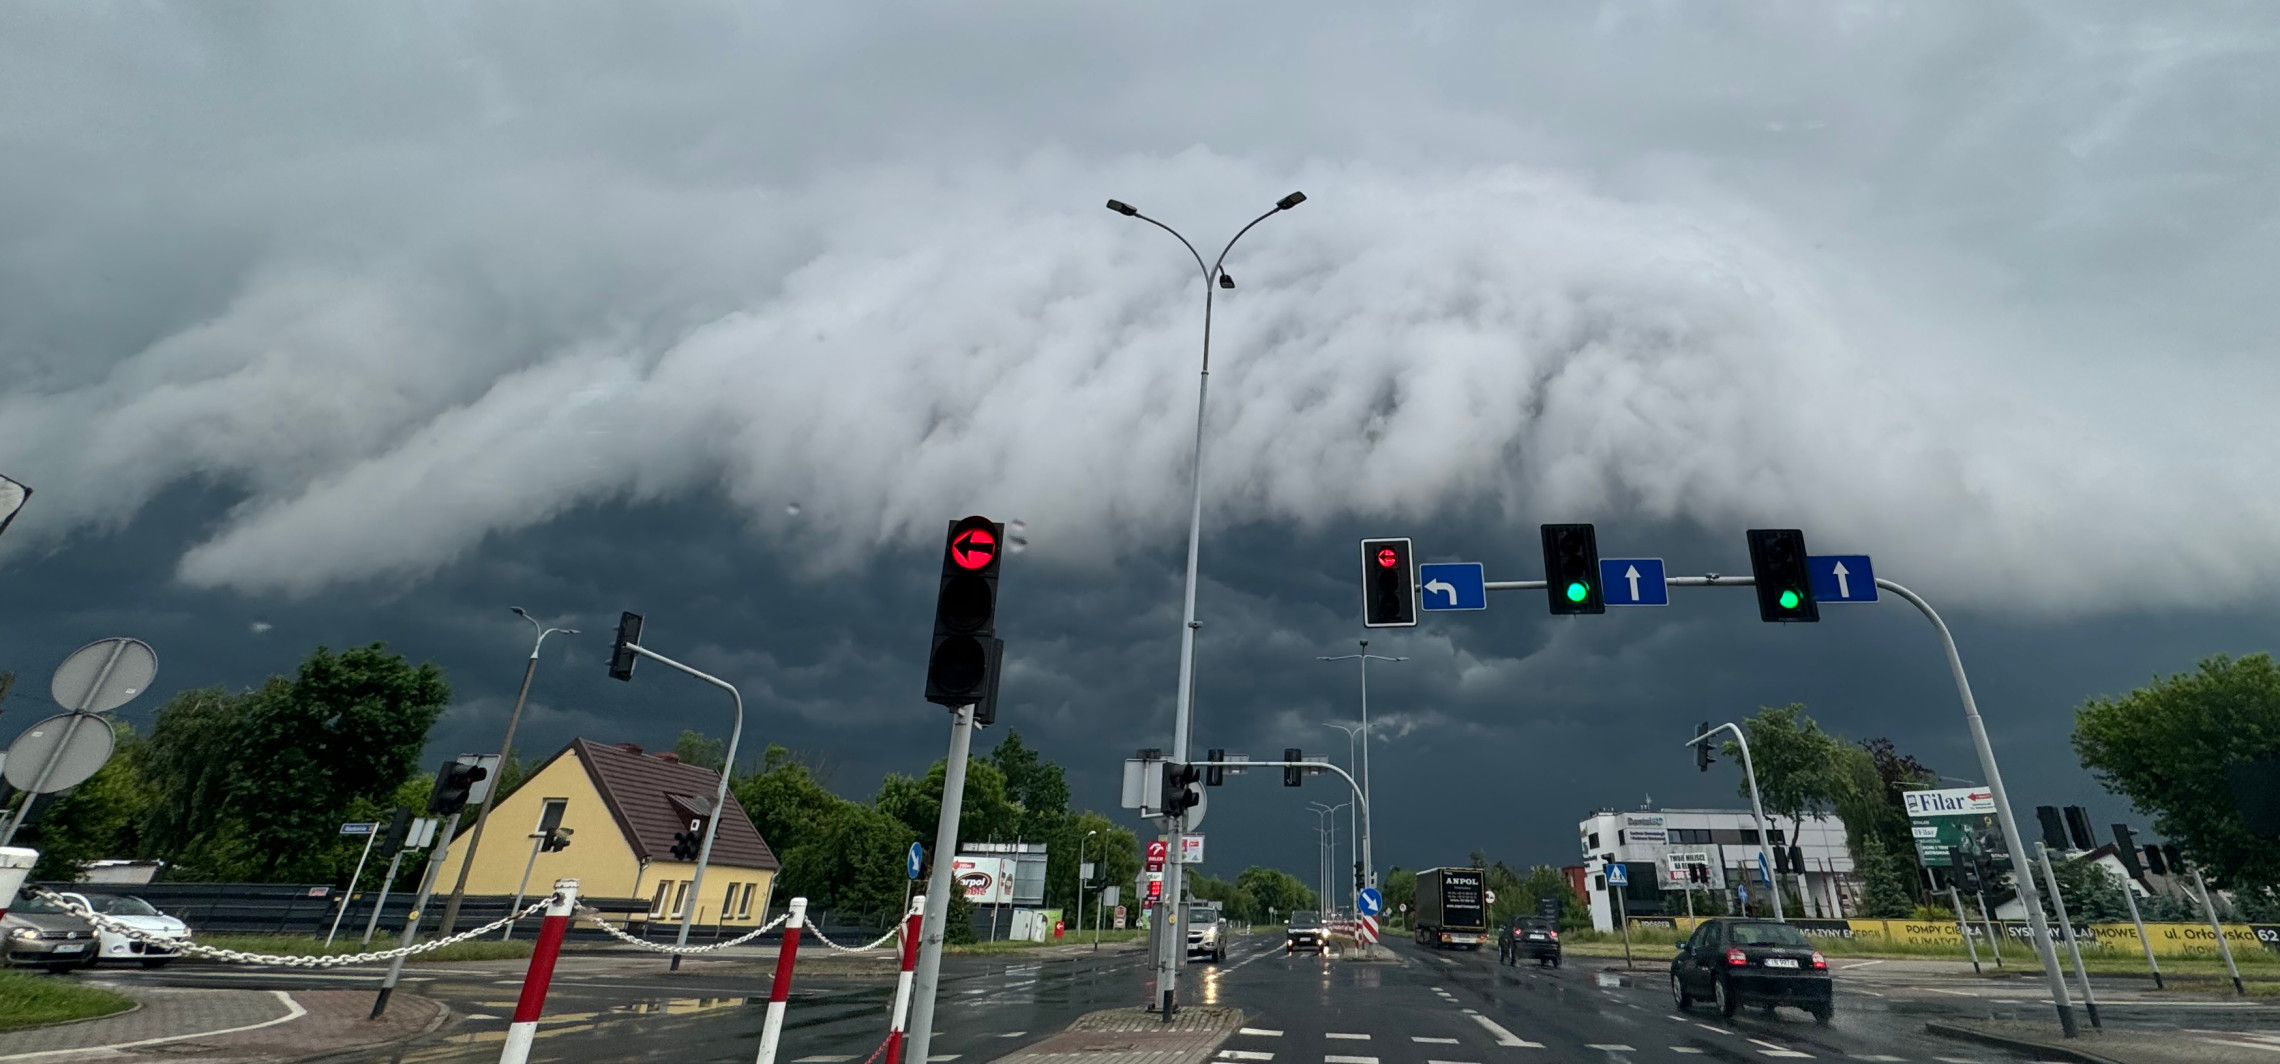 Inowrocław - Efektowne chmury nad miastem. Niebezpiecznie w pogodzie